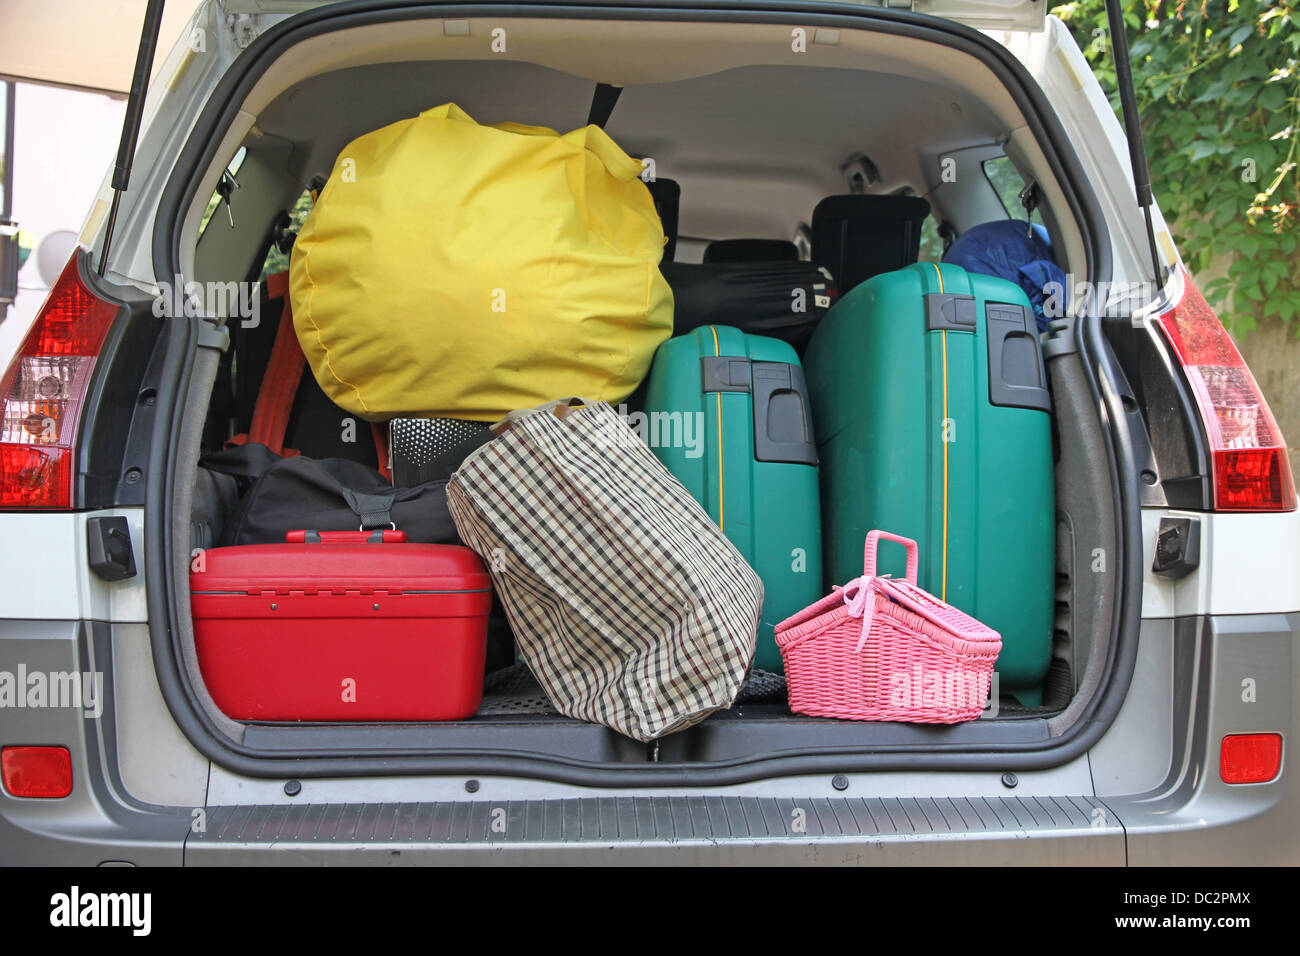 Deux valises vert et de nombreux sacs dans le coffre de la voiture prête à partir pour les vacances Banque D'Images